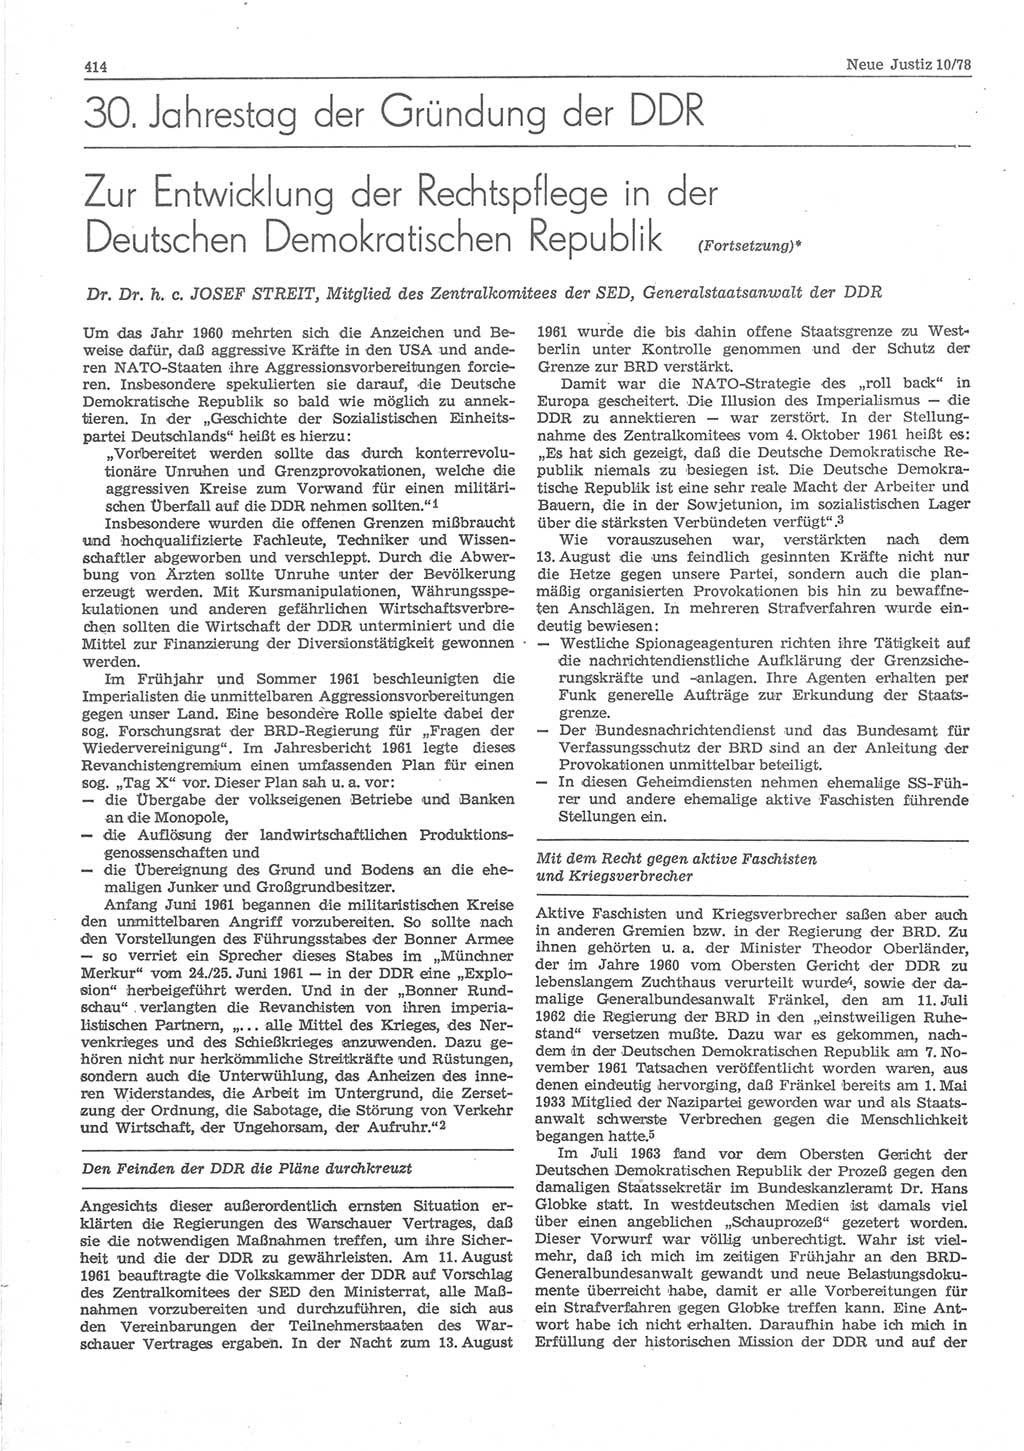 Neue Justiz (NJ), Zeitschrift für sozialistisches Recht und Gesetzlichkeit [Deutsche Demokratische Republik (DDR)], 32. Jahrgang 1978, Seite 414 (NJ DDR 1978, S. 414)